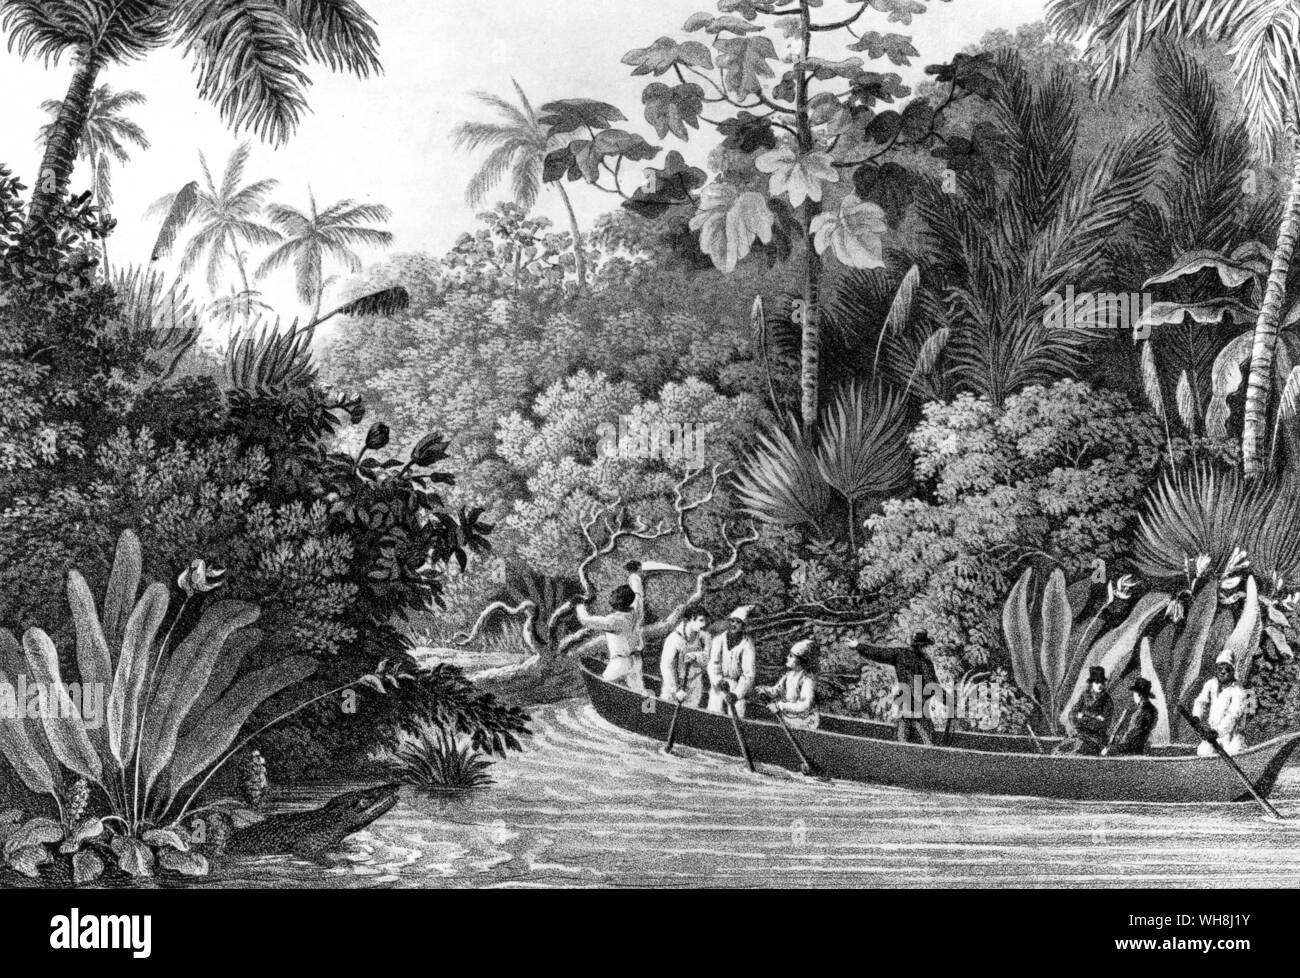 "Le contraste de l'palmiers poussent au milieu des sortes de branchement commun, ne manque jamais de donner à la scène un caractère tropical." (citation) Darwin et le Beagle par Alan Moorhead, page 56. Banque D'Images